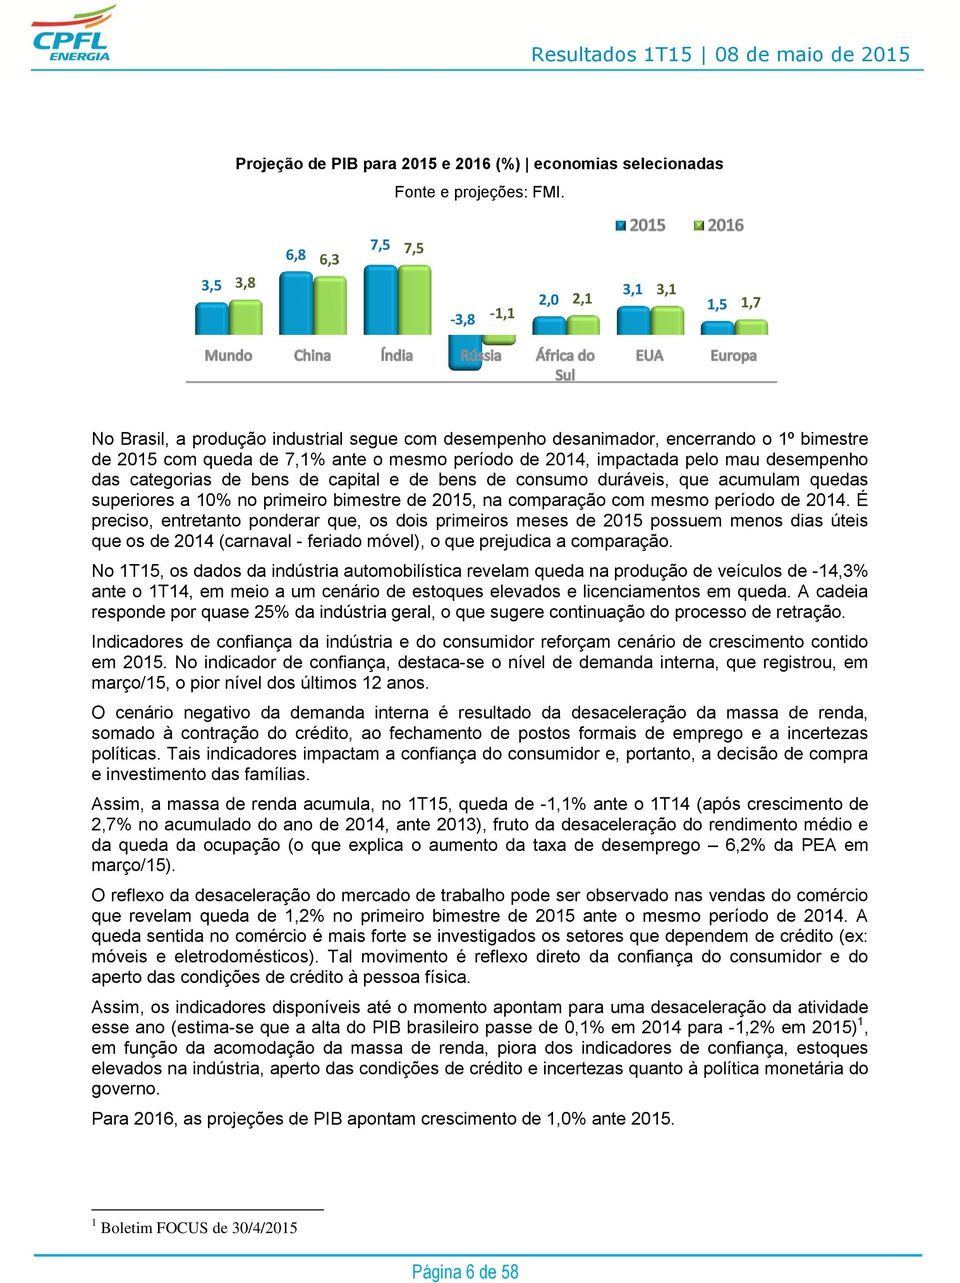 2014, impactada pelo mau desempenho das categorias de bens de capital e de bens de consumo duráveis, que acumulam quedas superiores a 10% no primeiro bimestre de 2015, na comparação com mesmo período